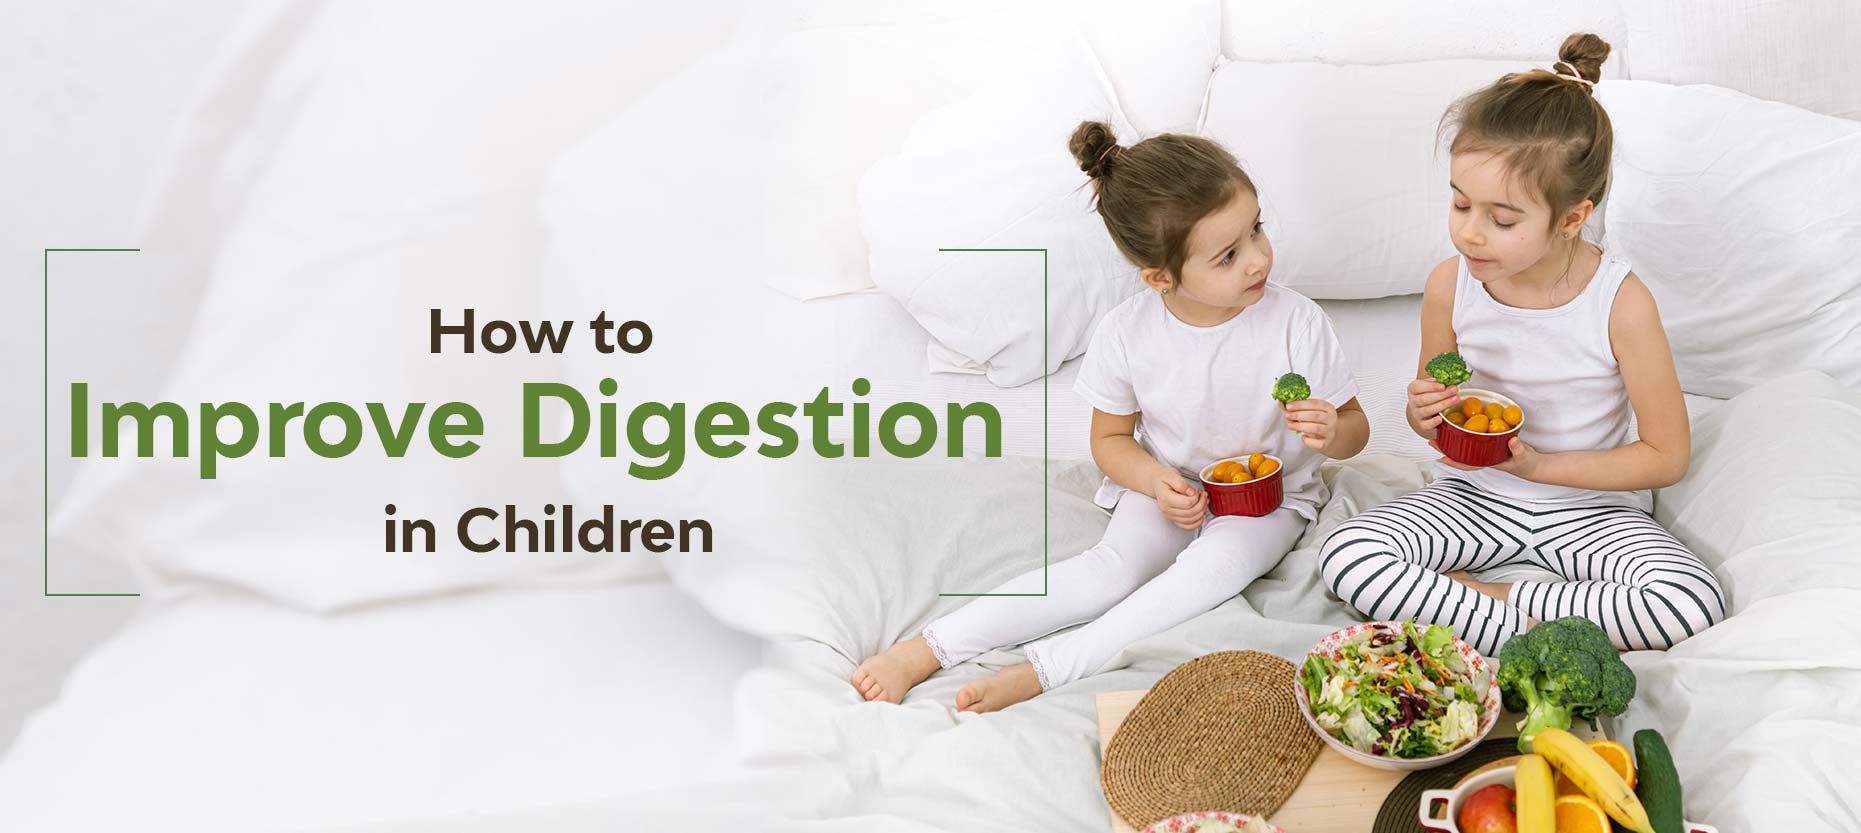 Improve Digestion in Children